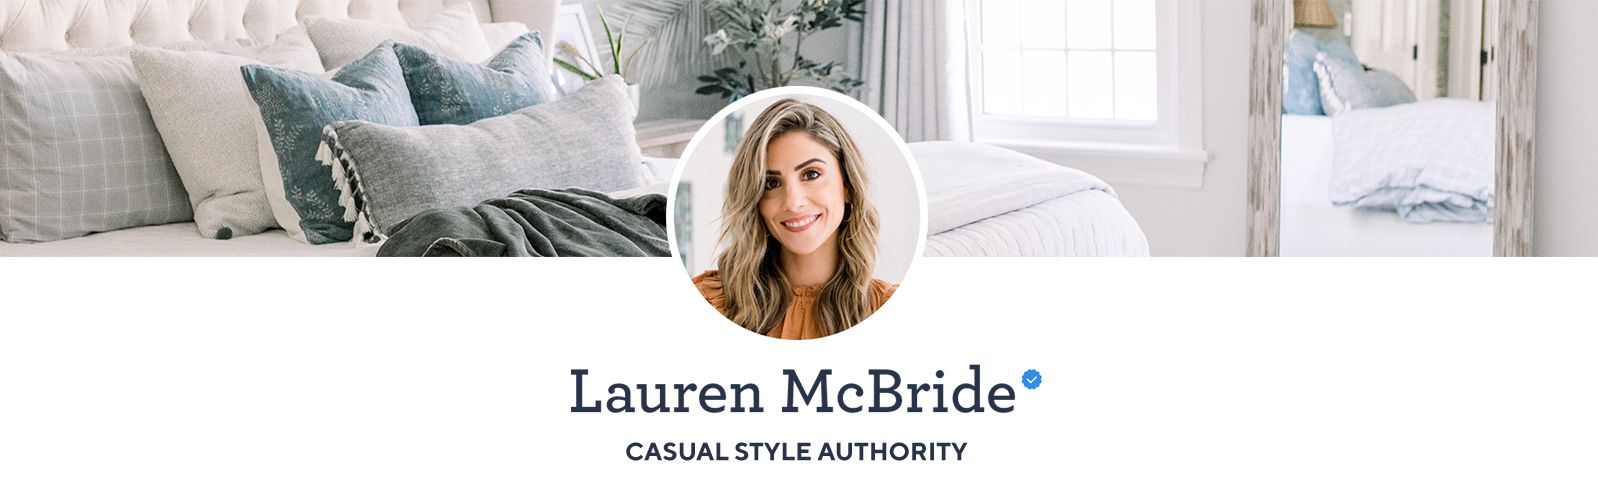 Lauren McBride Channel —